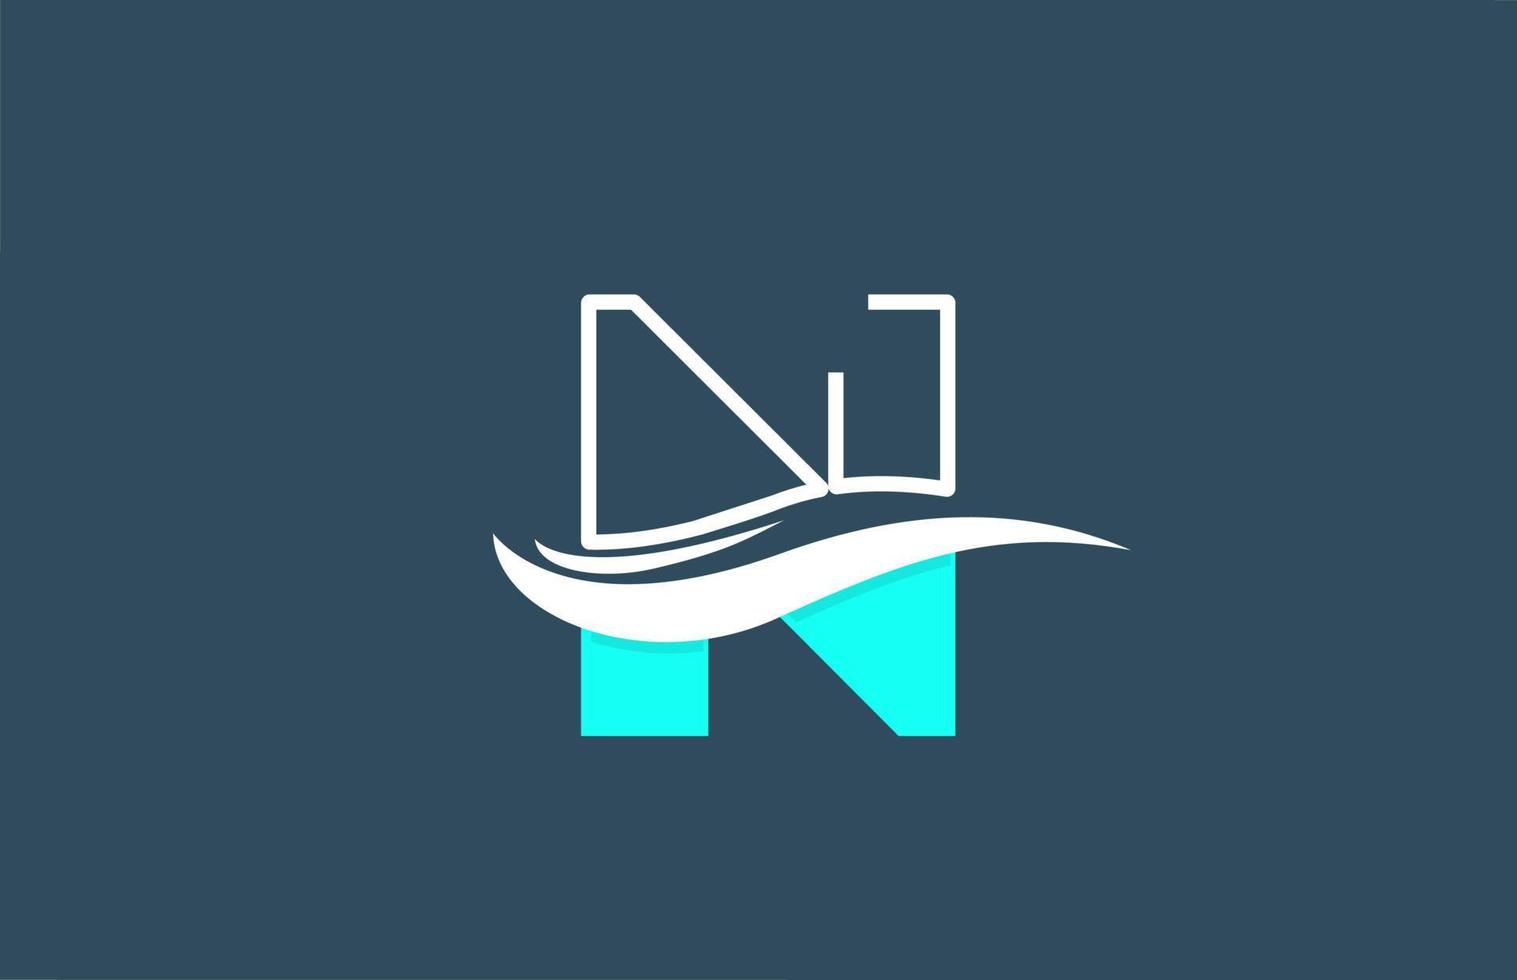 n blauw wit alfabet letterpictogram logo voor bedrijf met swoosh ontwerp vector